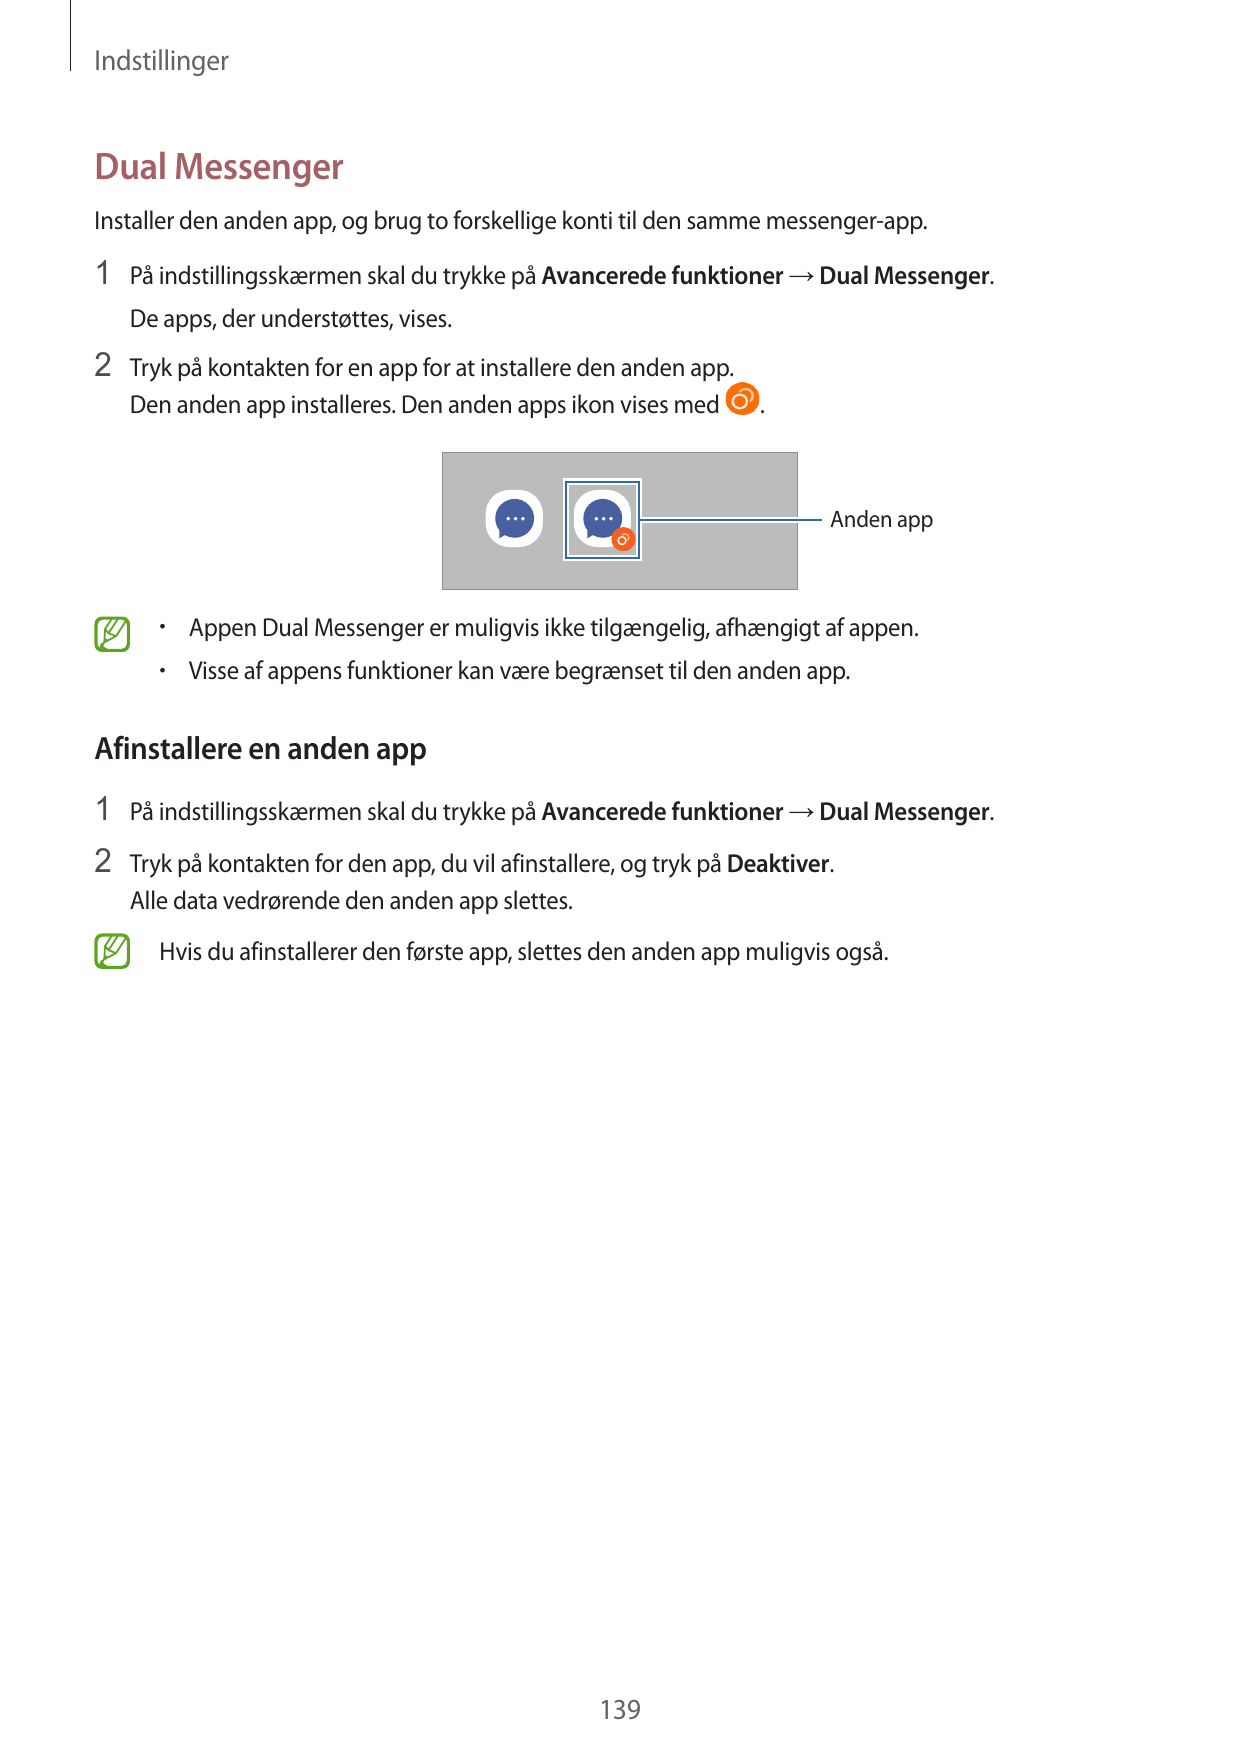 IndstillingerDual MessengerInstaller den anden app, og brug to forskellige konti til den samme messenger-app.1 På indstillingssk